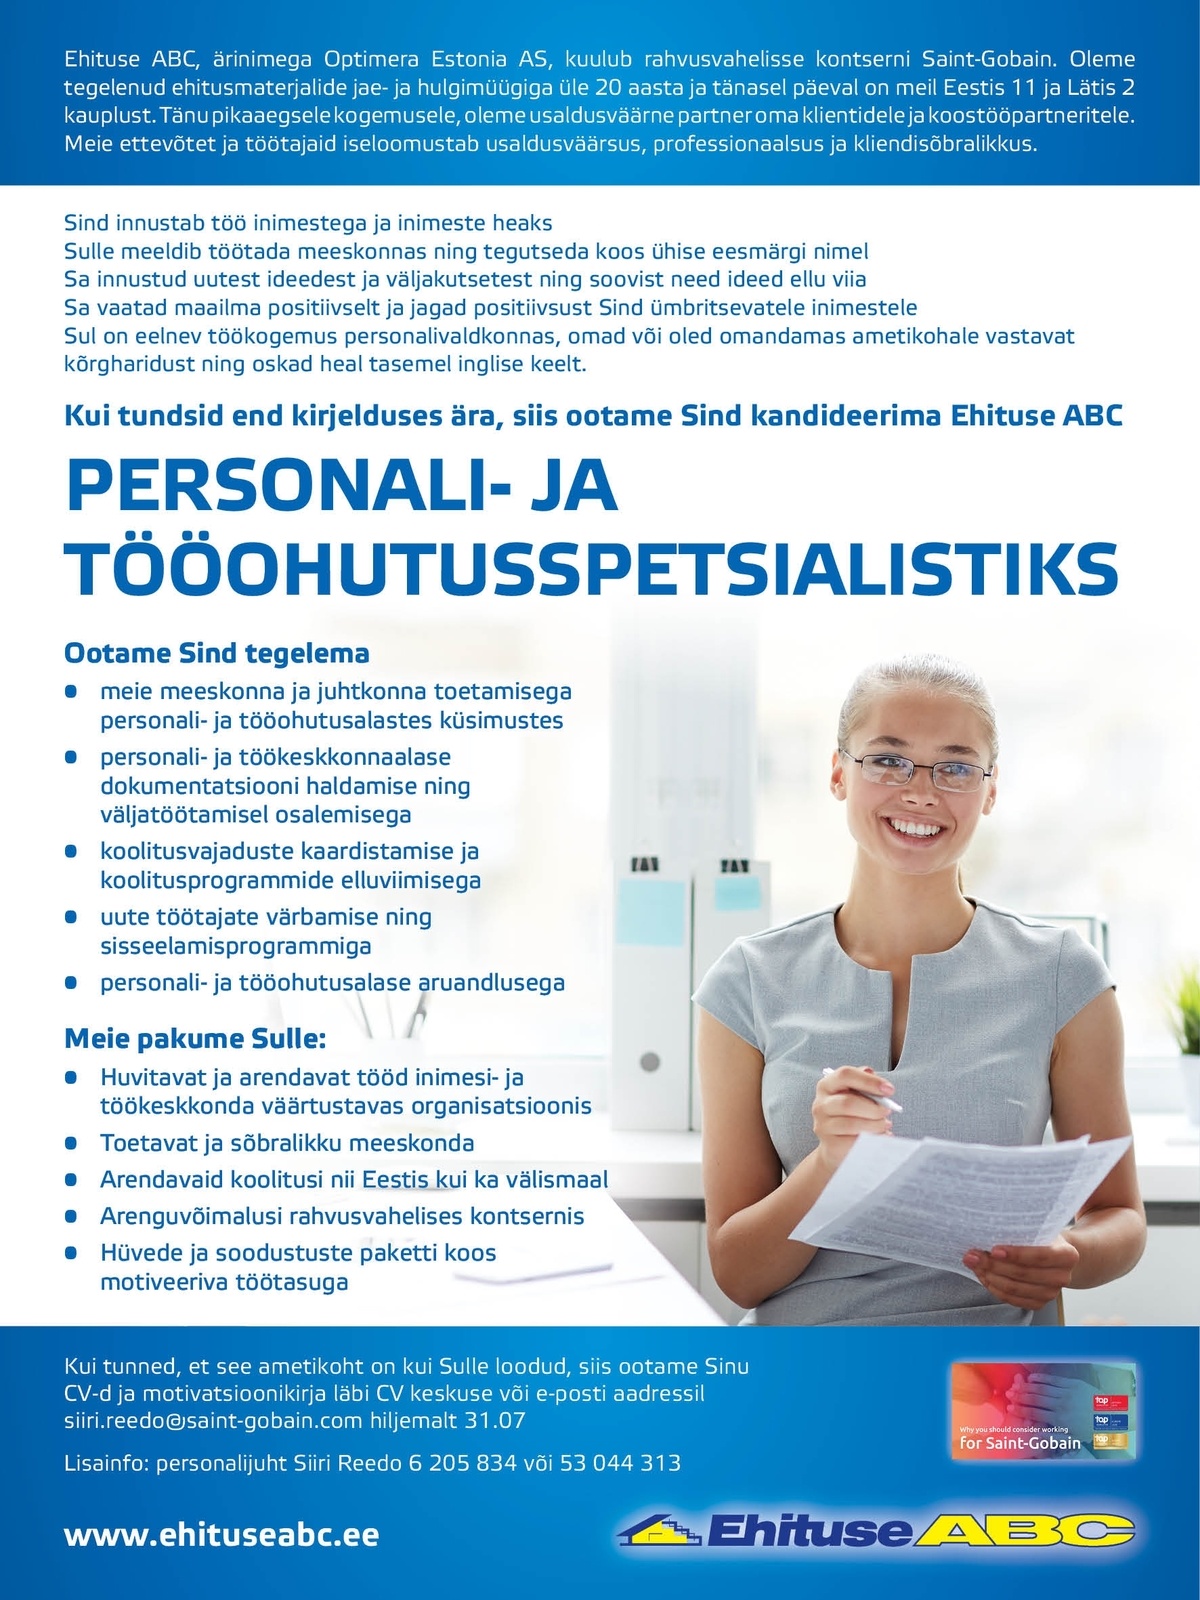 Optimera Estonia AS - Ehituse ABC Personali- ja tööohutusspetsialist